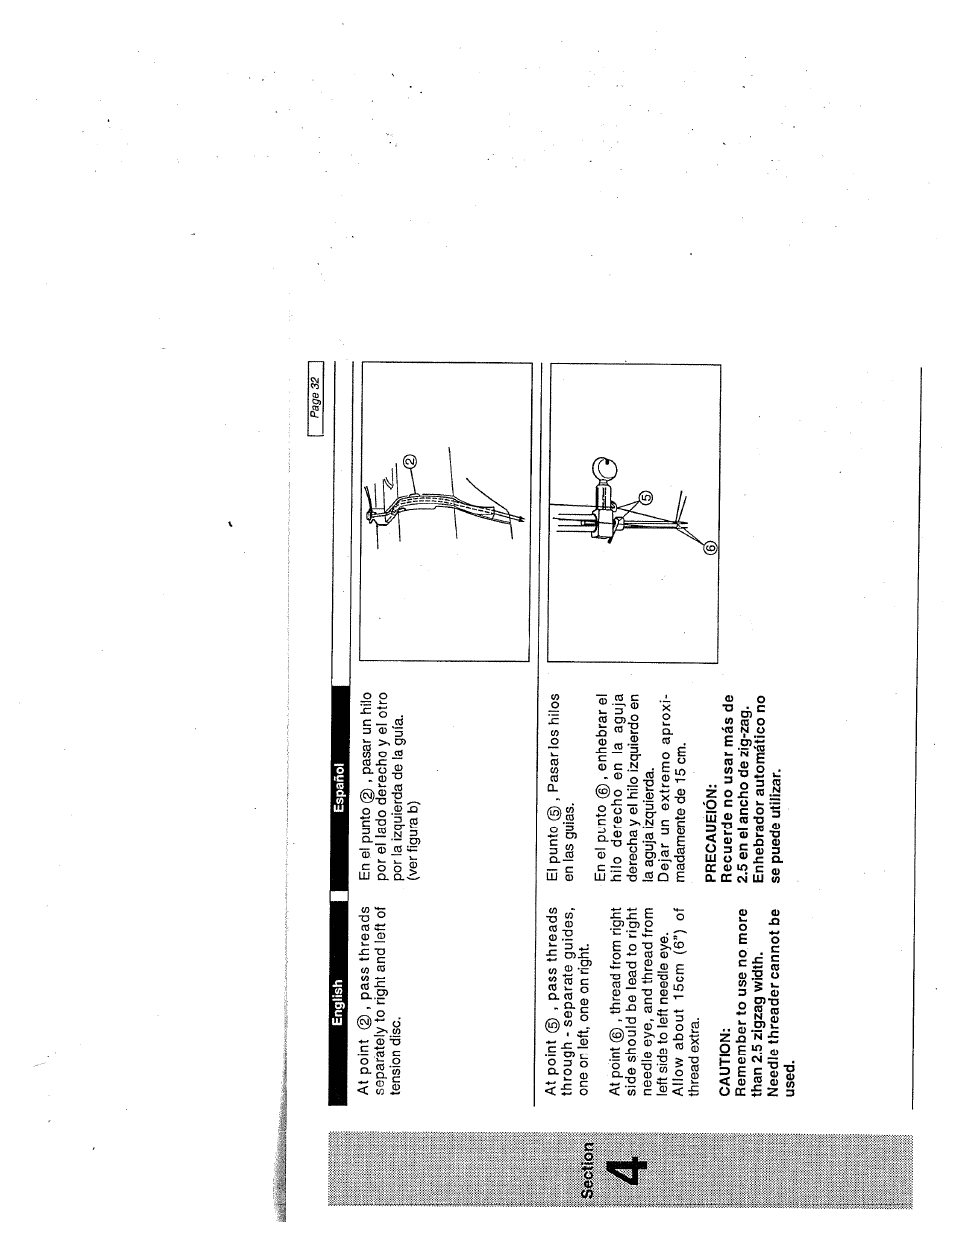 Caution, Precaueión | SINGER W1999 User Manual | Page 40 / 67